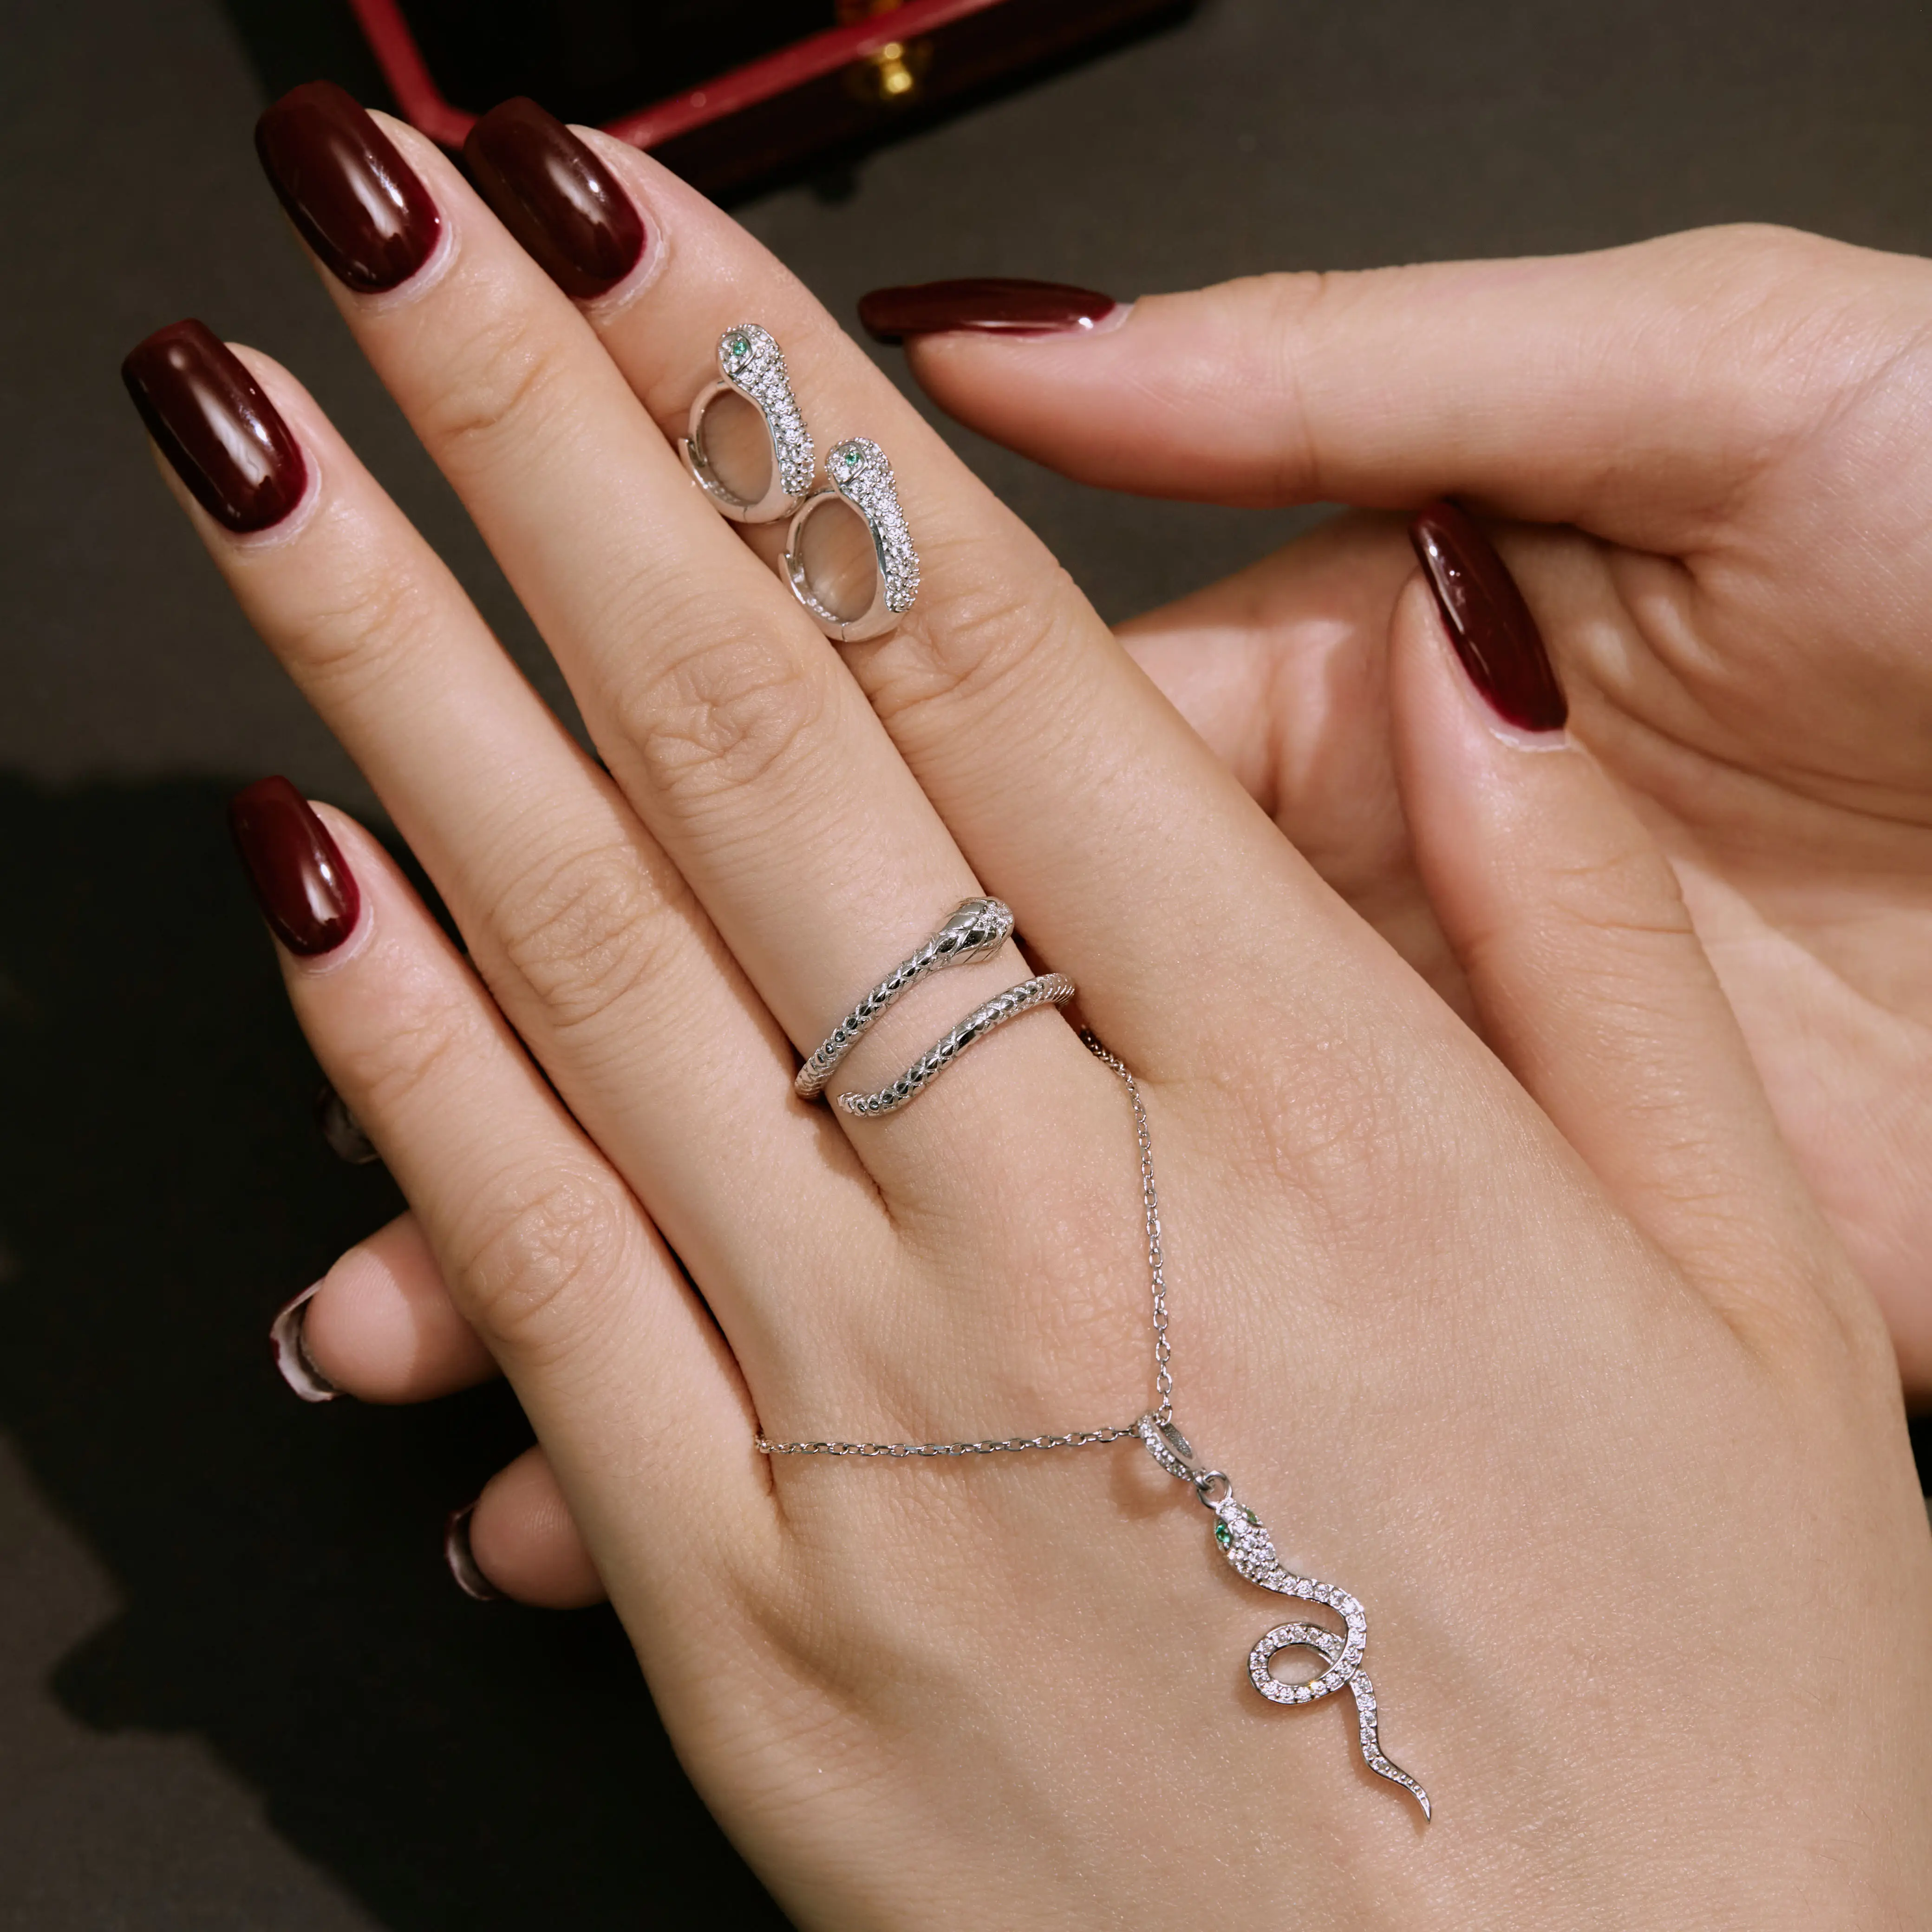 Vintage yılan gümüş 925 yüzük takı seti kişiselleştirilmiş zümrüt kübik zirkonya yılan küpe kolye yüzük kadınlar için